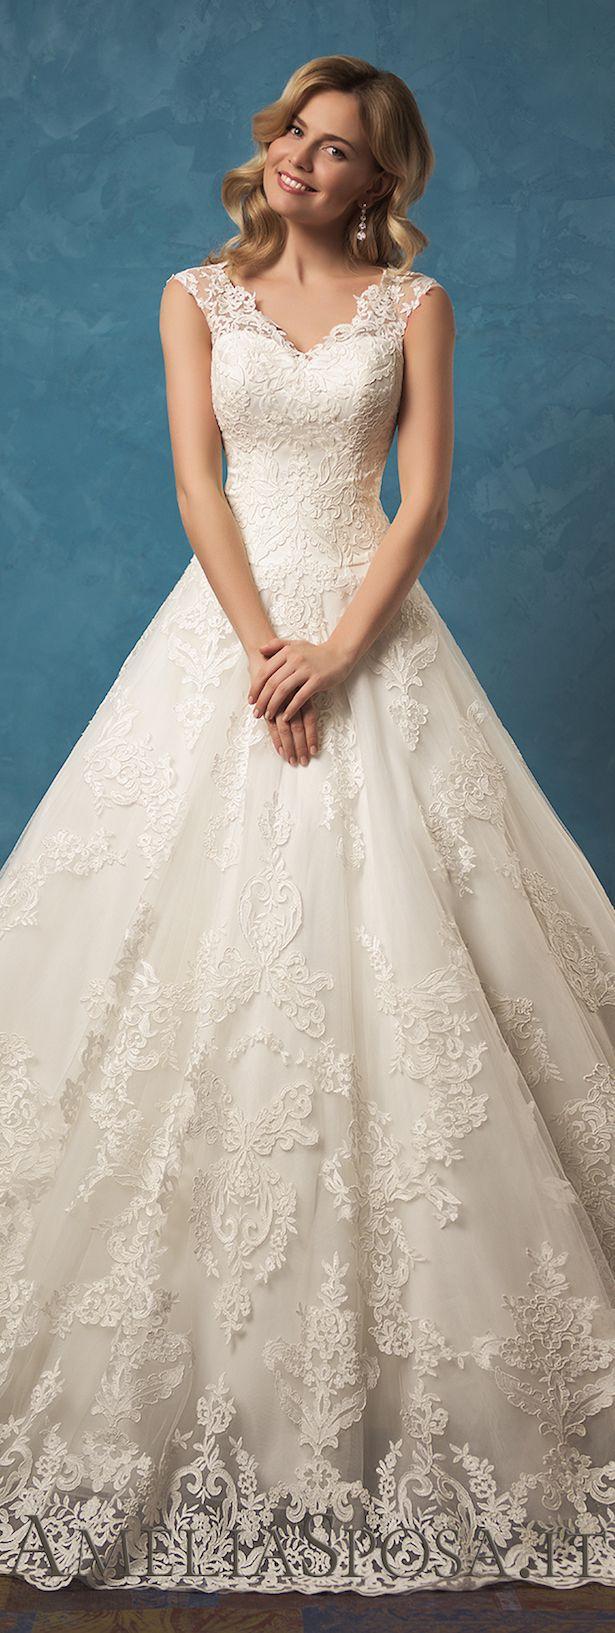 Wedding - Amelia Sposa 2017 Wedding Dress